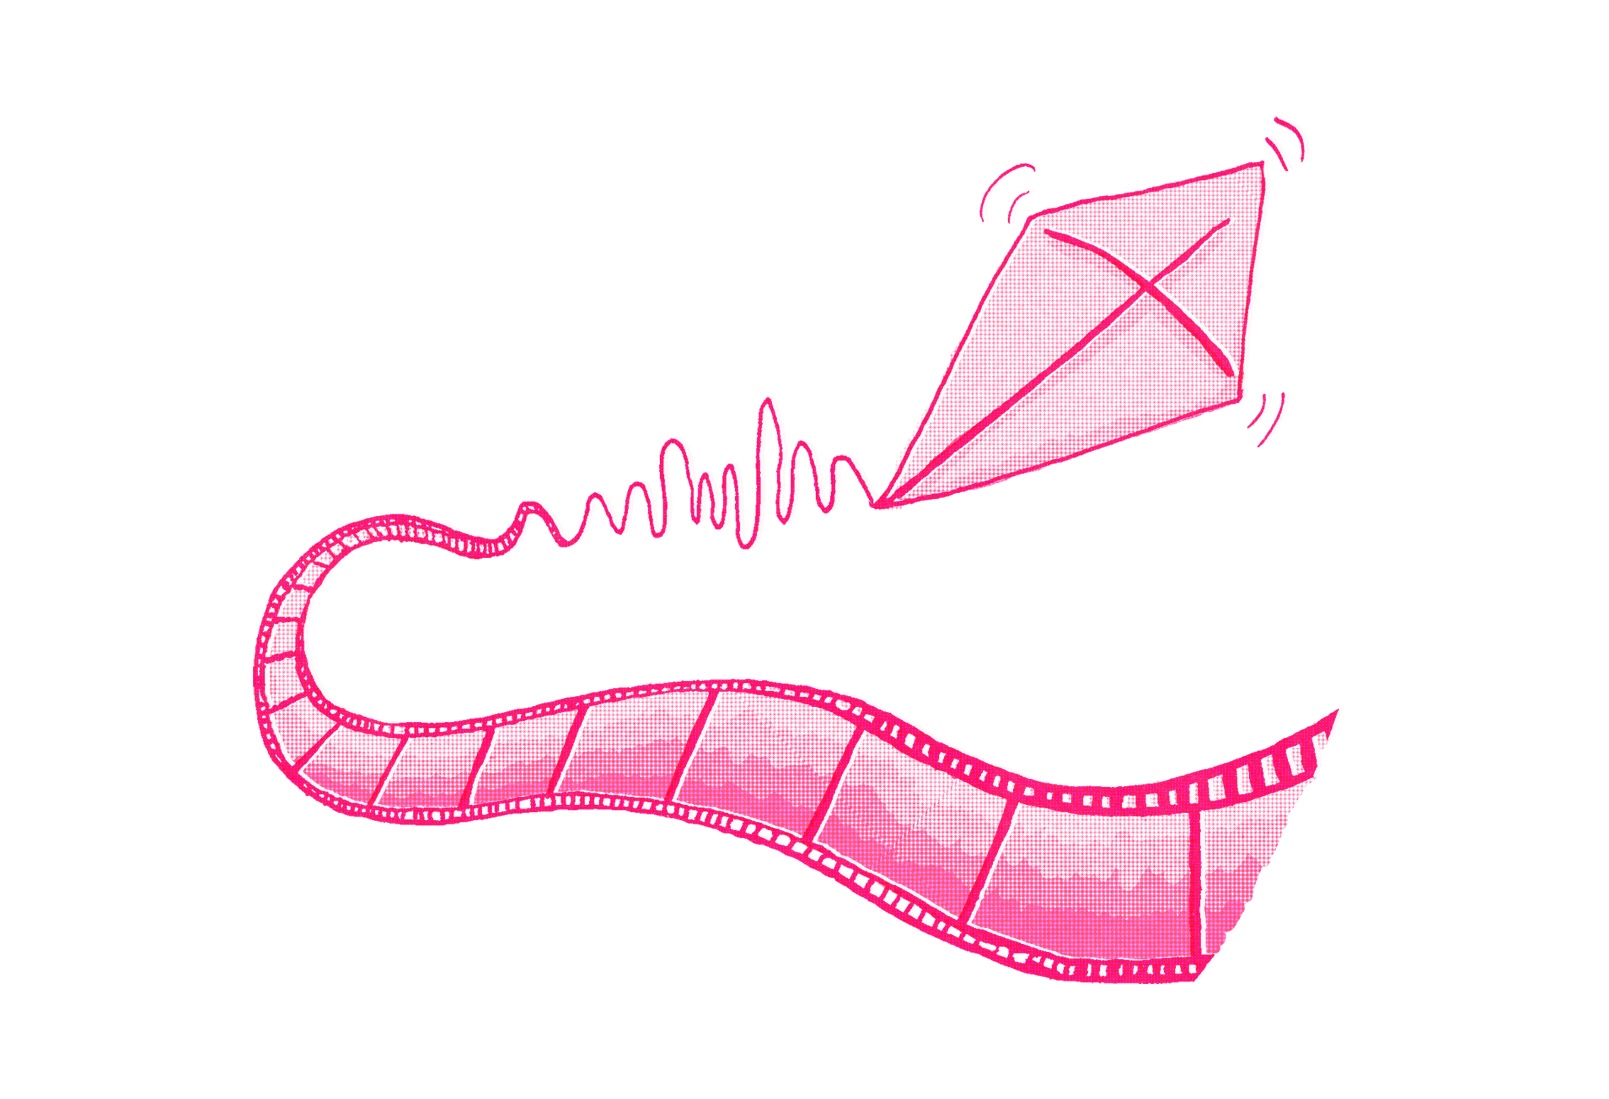 Illustration eines rosafarbenen Drachens, der mit einem Schwanz, der einem Filmstreifen ähnelt, fliegt. Die Schnur des Drachens ist mit Wellenlinien dargestellt, die eine Bewegung oder eine Signalübertragung andeuten.